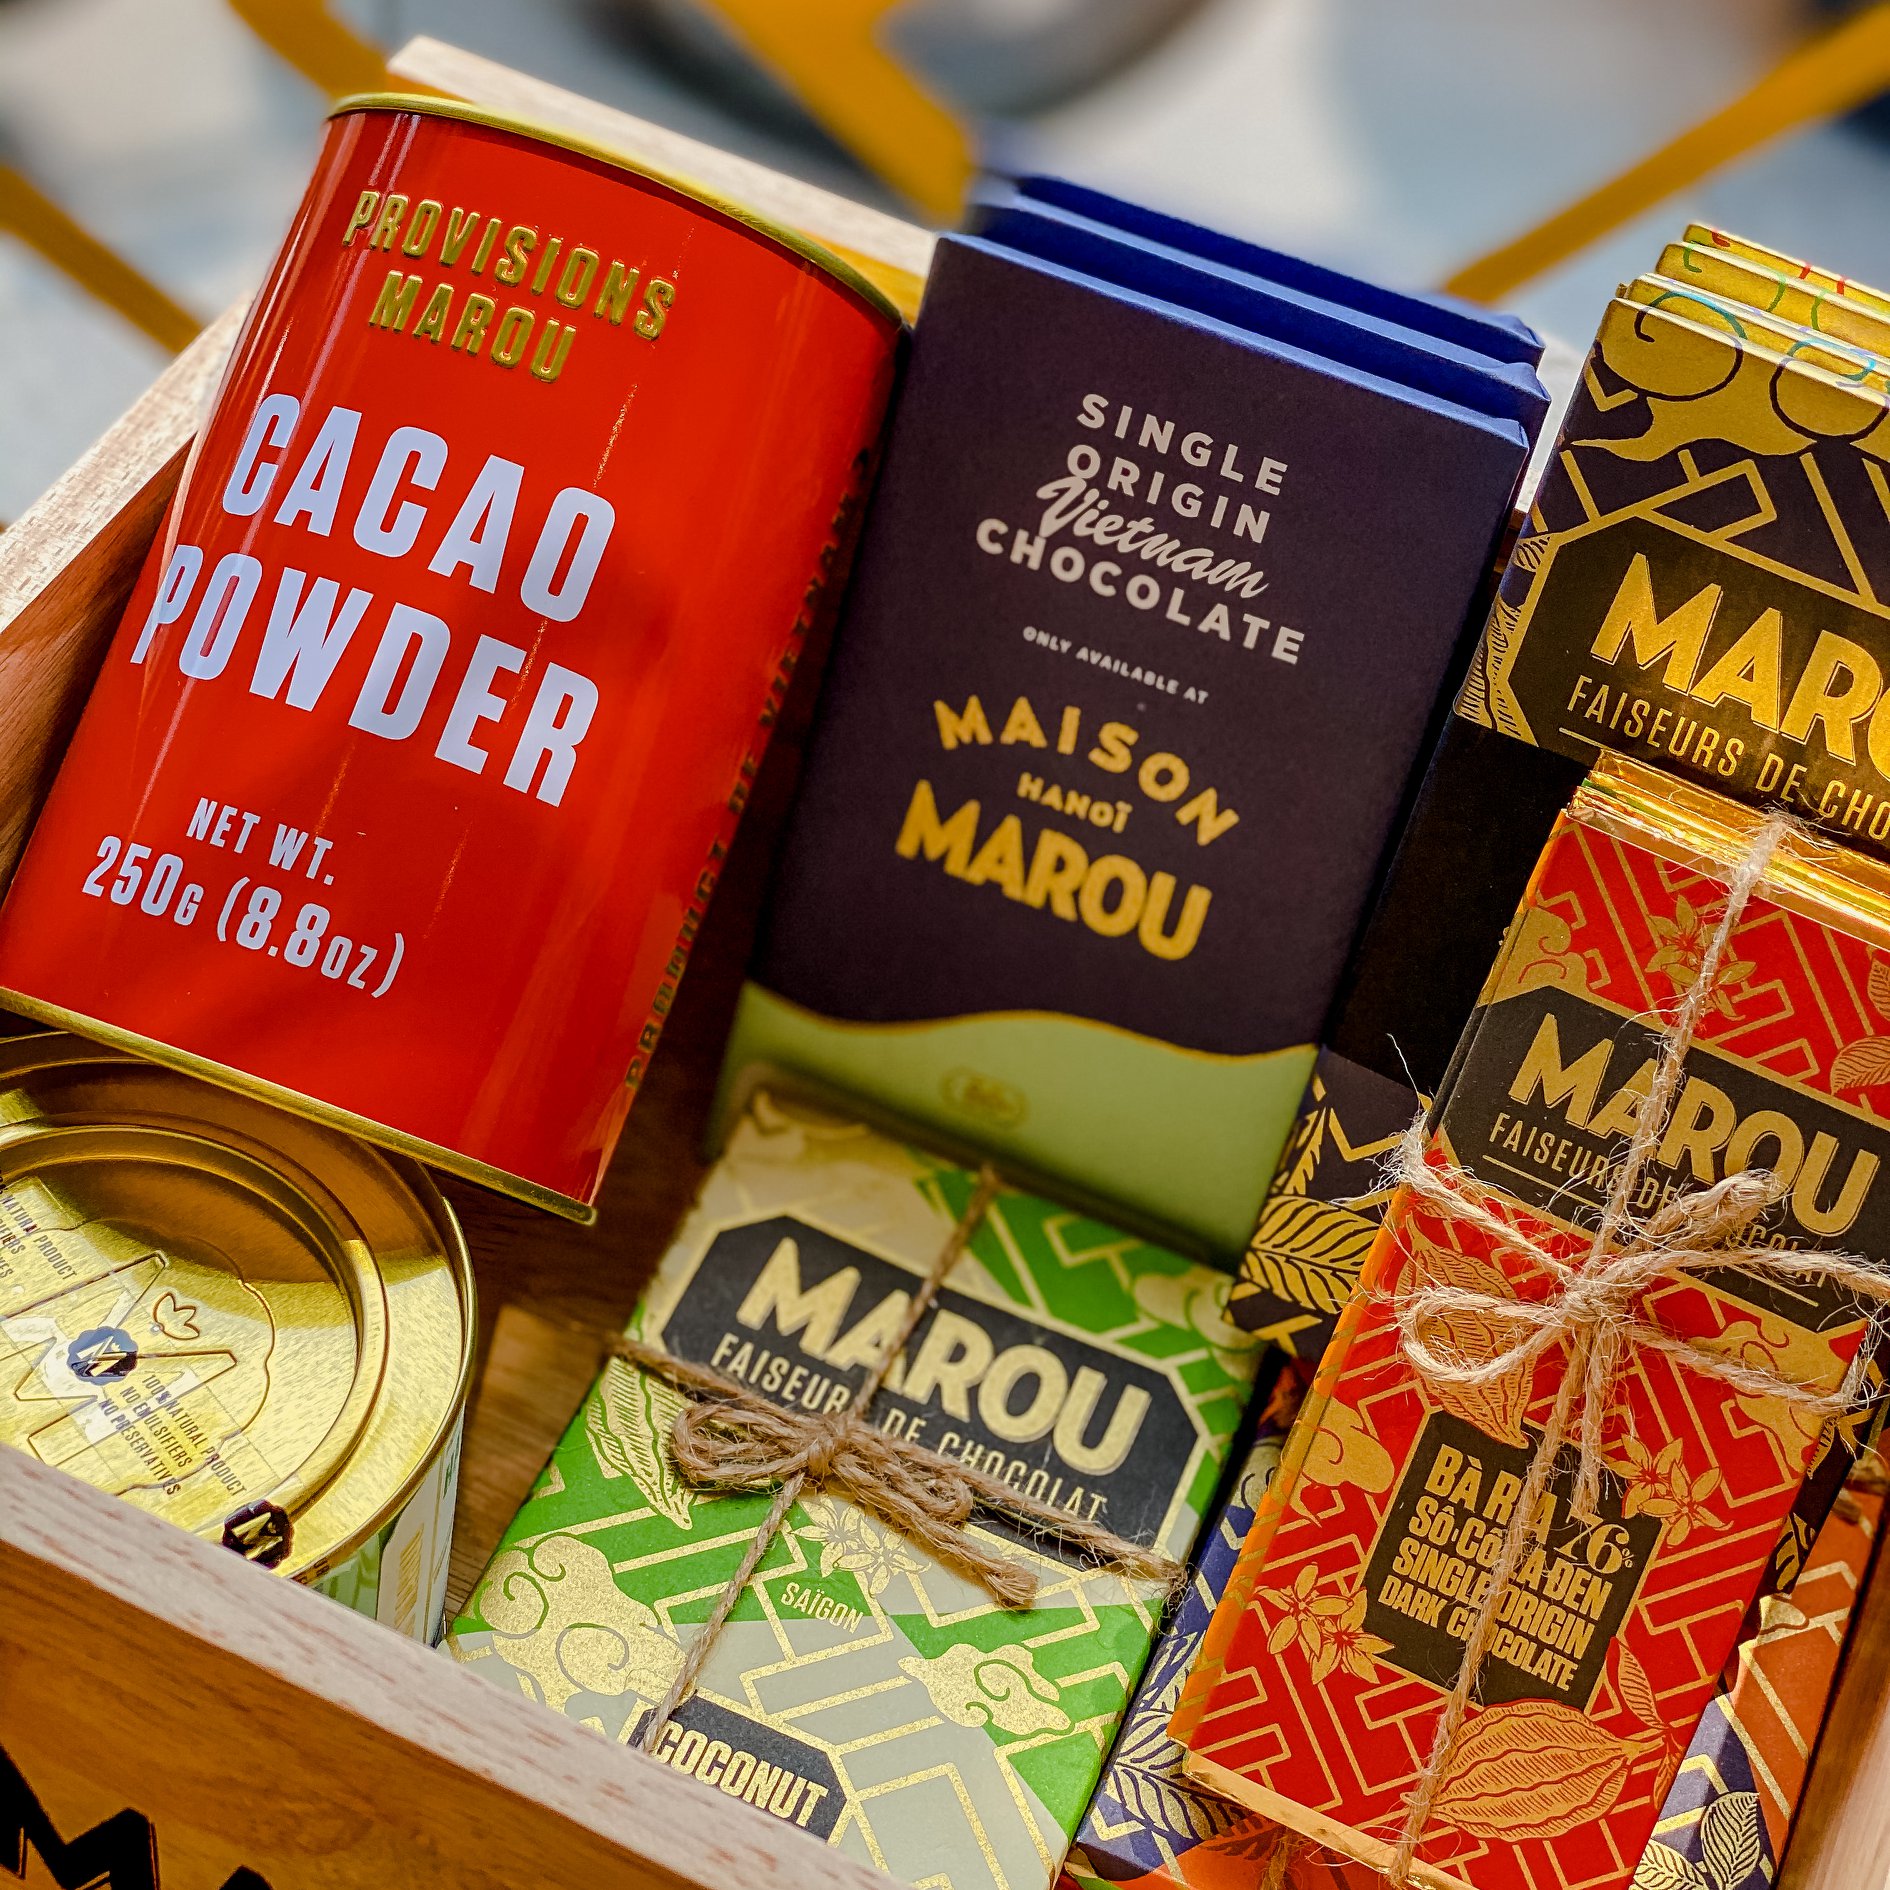 Sản phẩm Maison Marou khá đa dạng, ngoài socola thanh còn có bột ca cao, bánh, kem...